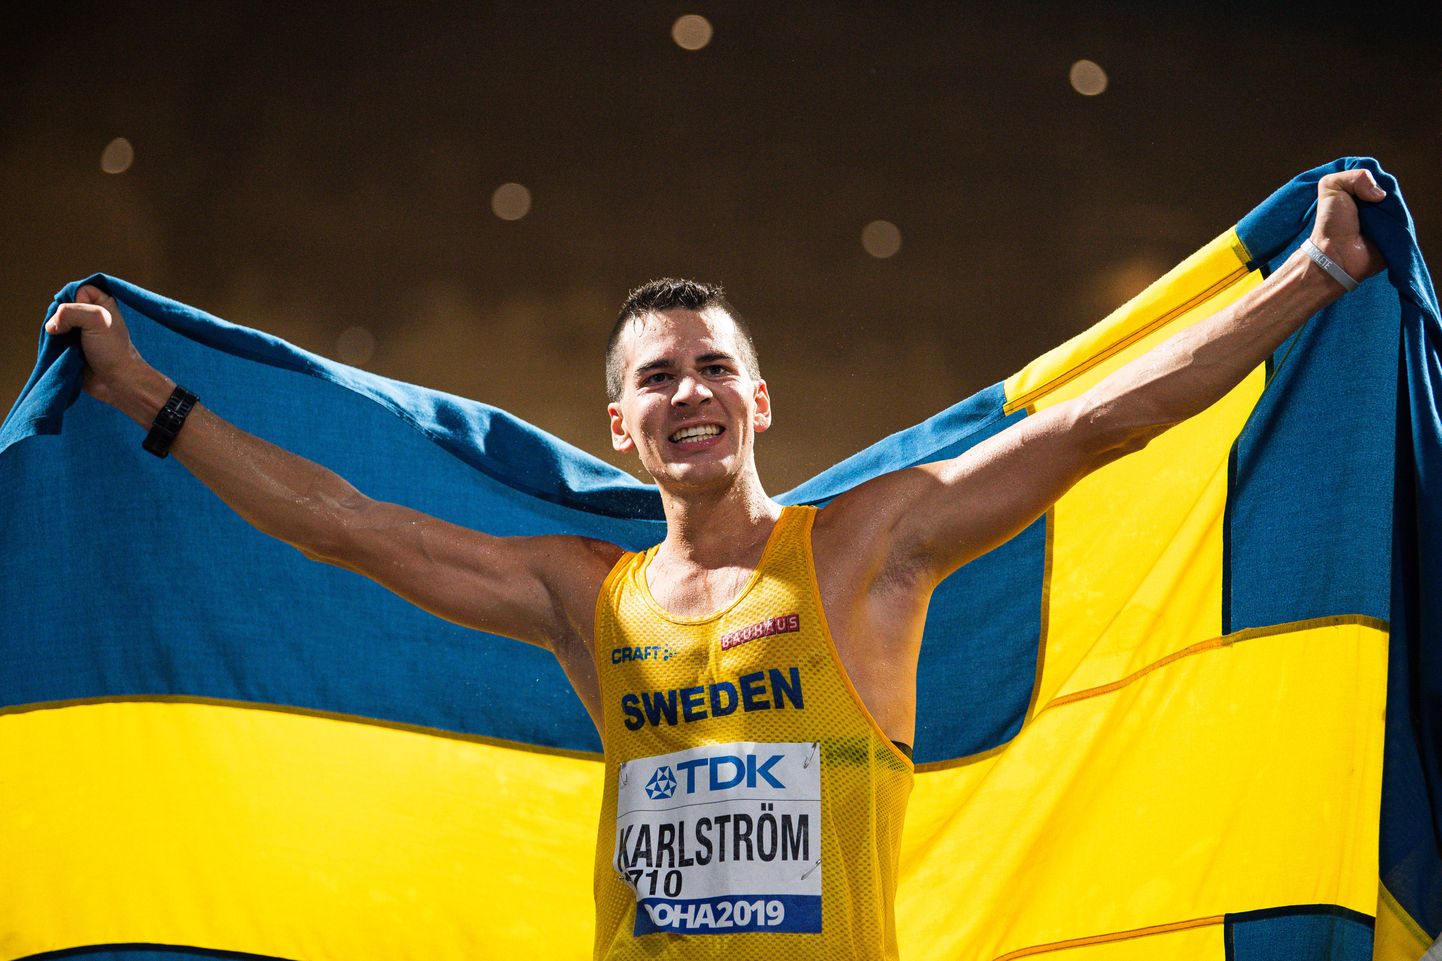 Rootsi käija Perseus Karlström võitis läinud ööl Dohas 20 kilomeetri distantsil pronksi.